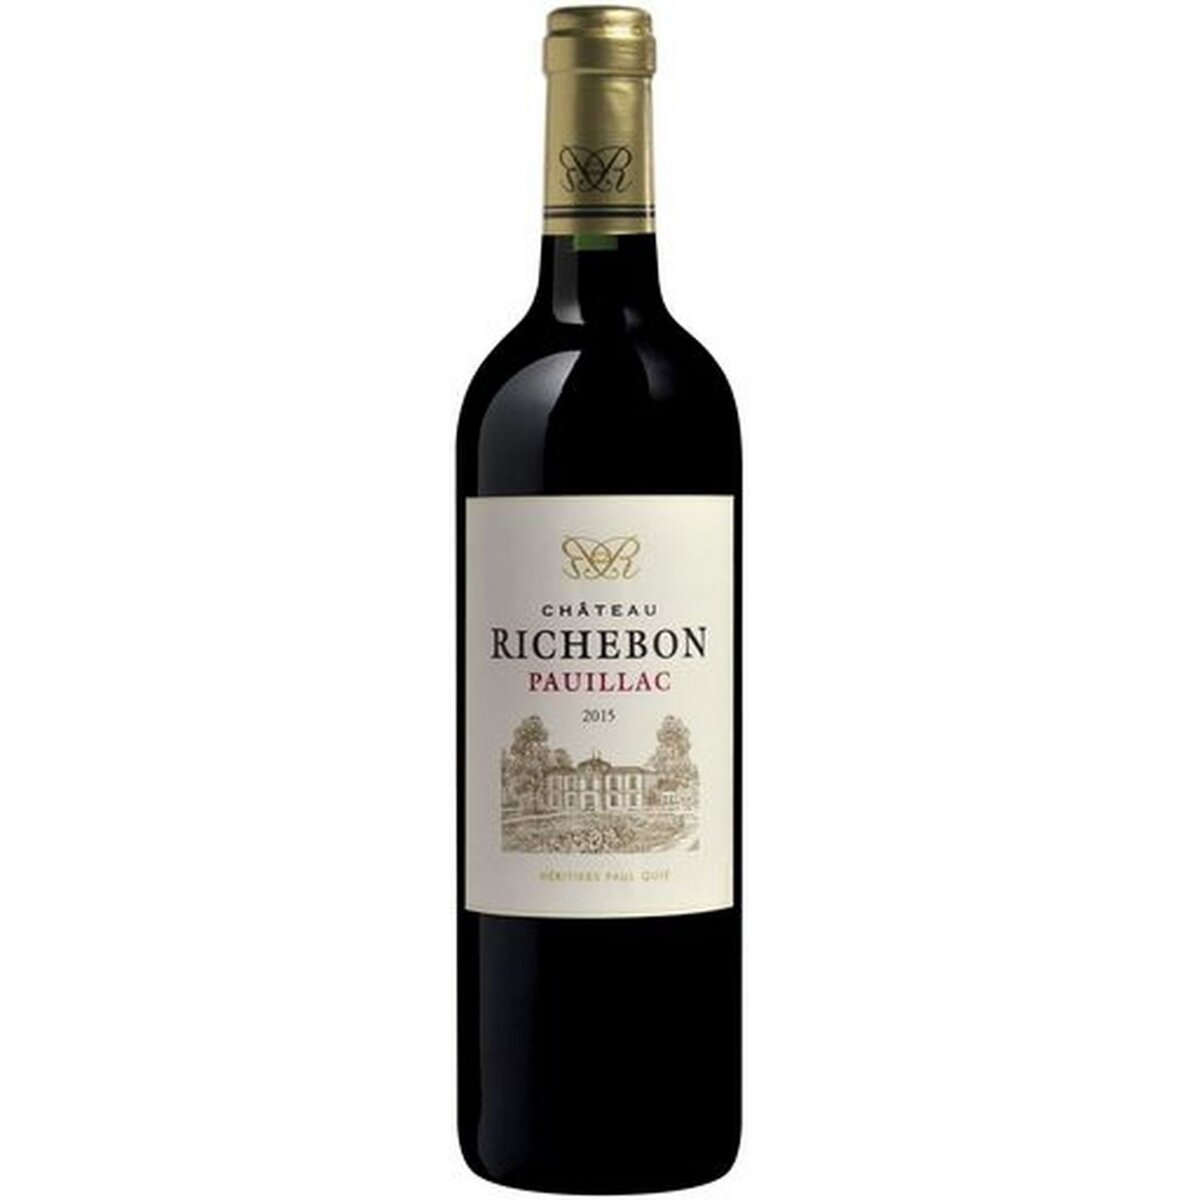 Vin rouge AOP Pauillac Château Richebon 2015 75cl